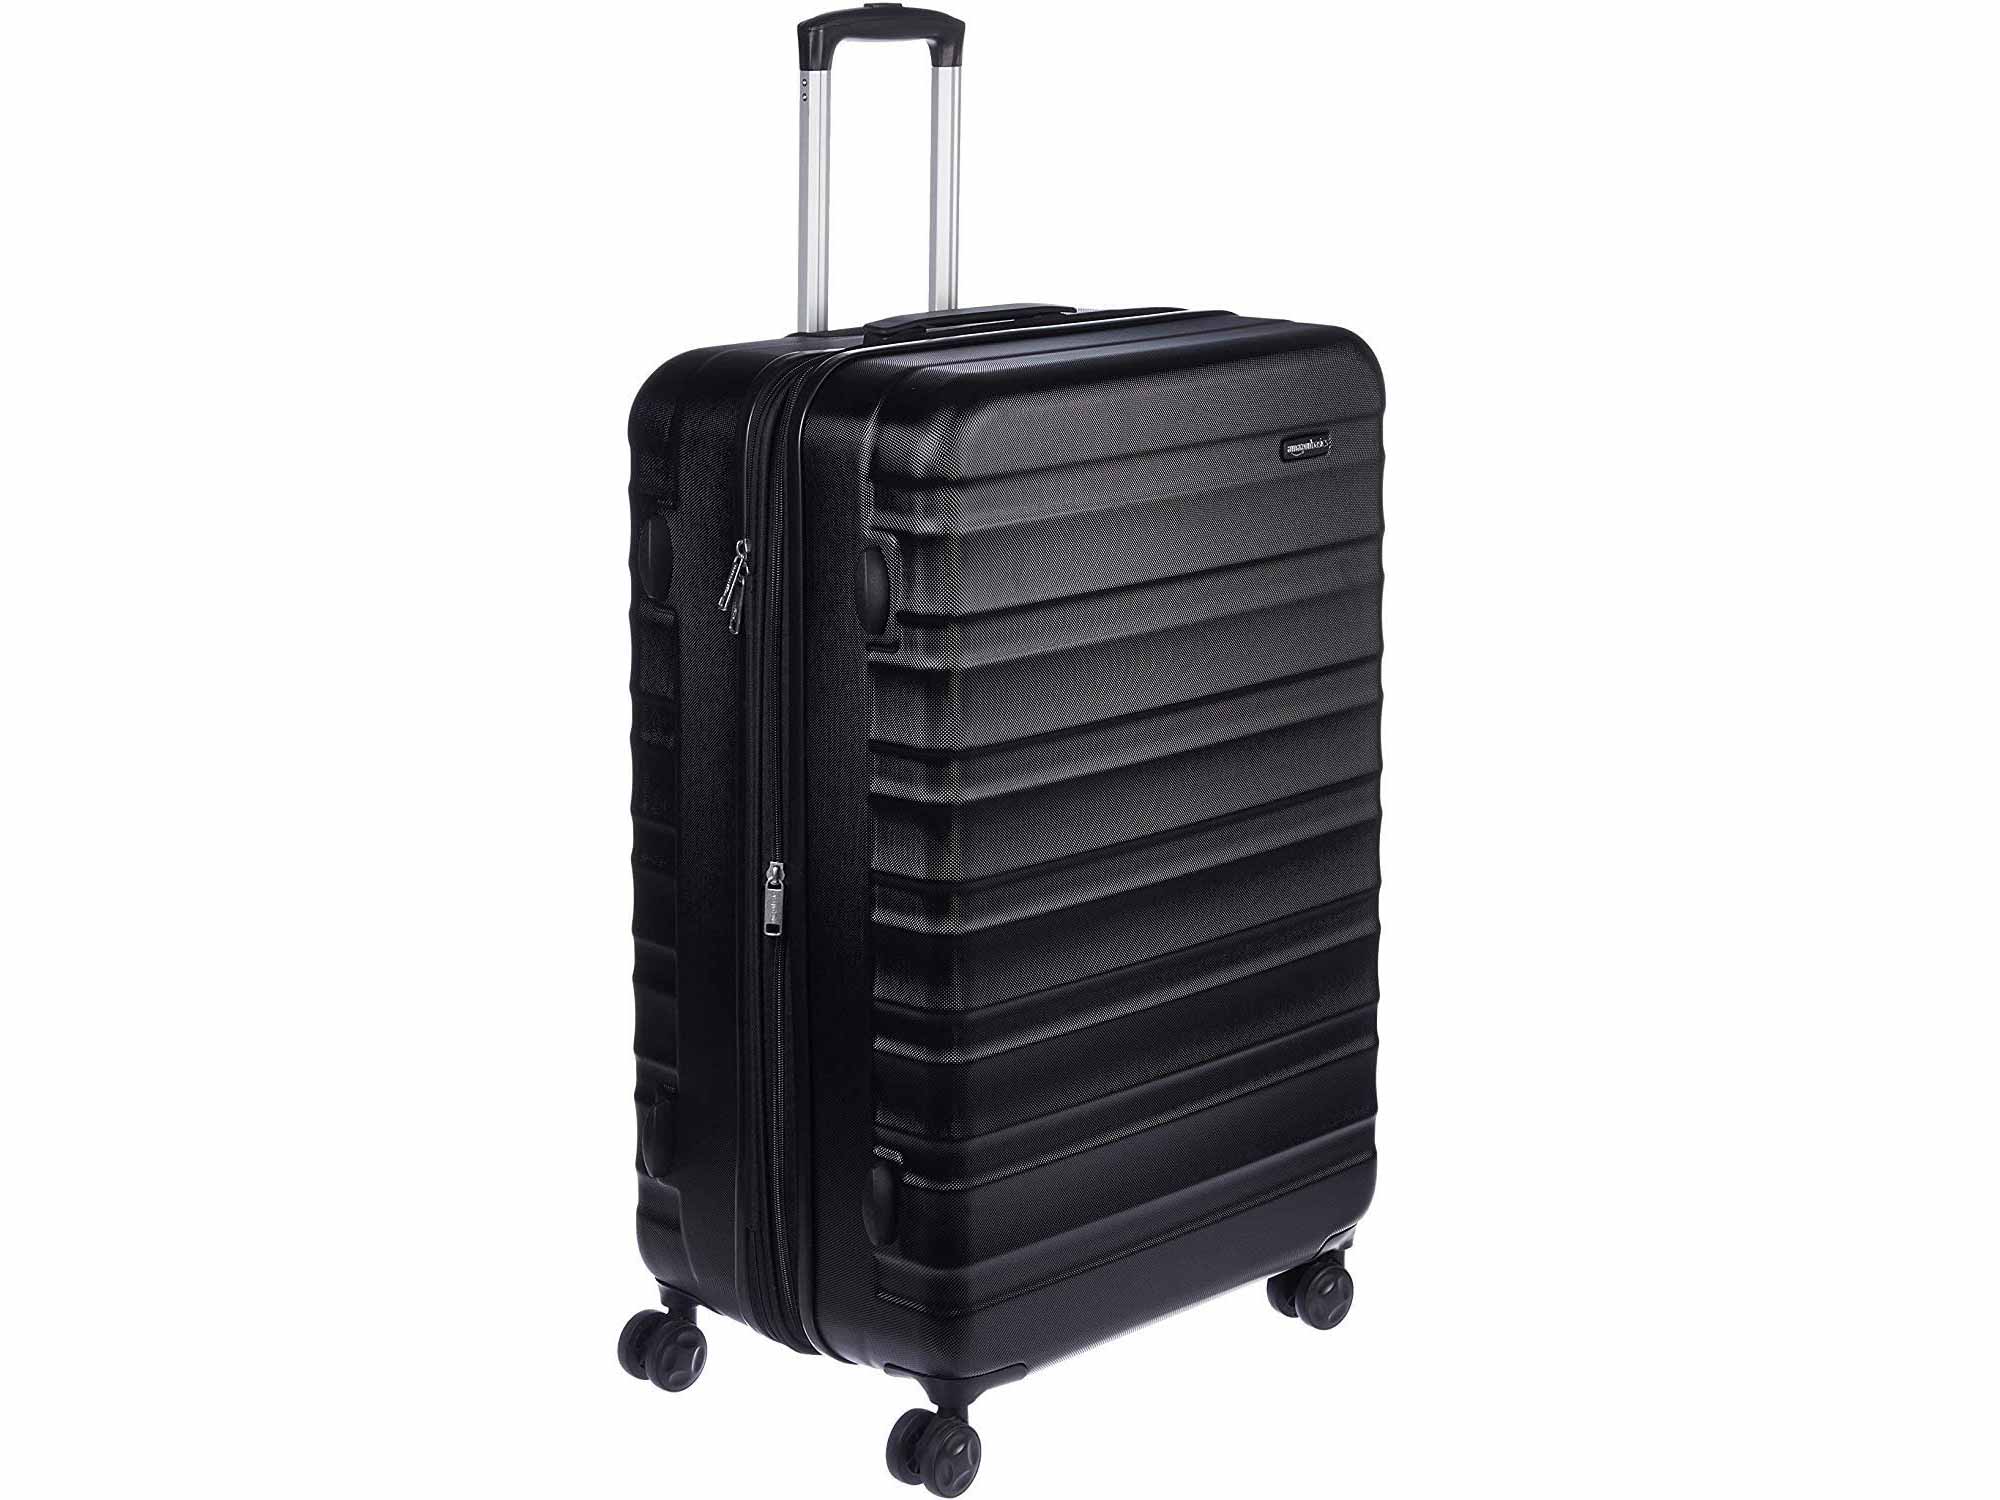 AmazonBasics Hardside Spinner Suitcase Luggage - Expandable with Wheels - 30 Inch, Black